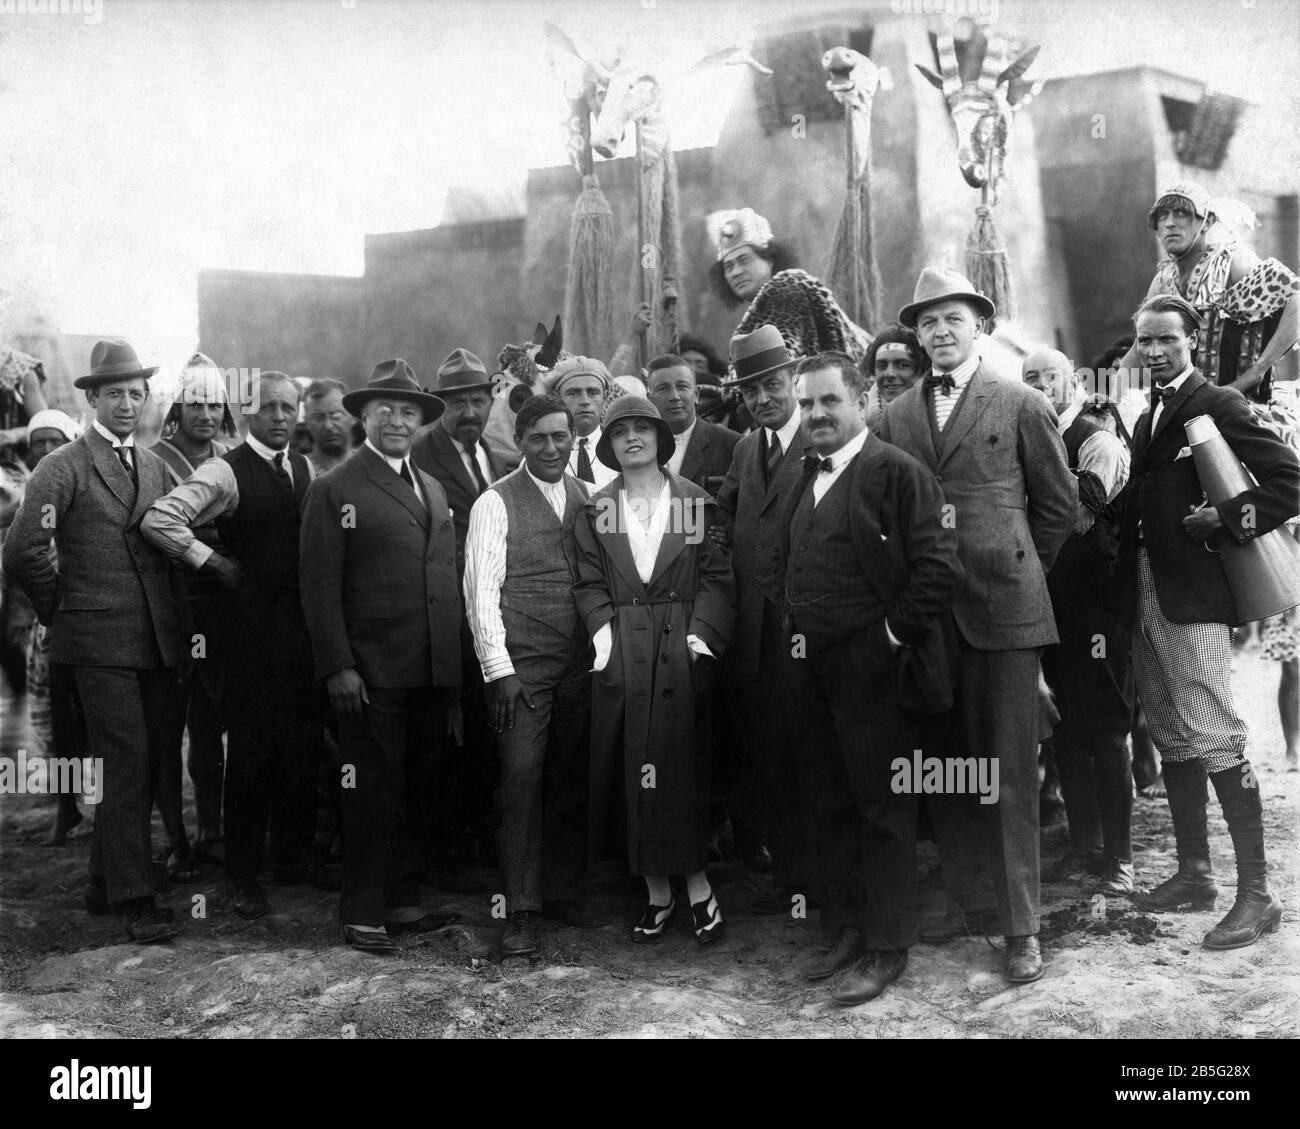 Direttore ERNST LUBITSCH con il visitatore POLA NEGRI e accanto al suo produttore PAUL DAVIDSON con dietro PAUL WEGENER in costume come Samlak a E.F.A. Studi a Berlino durante le riprese di DAS WEISS DES PHARAO aka GLI AMORI DEL FARAONE 1922 co-produzione di Ernst Lubitsch - Film e Europaische Film - Allianz Foto Stock